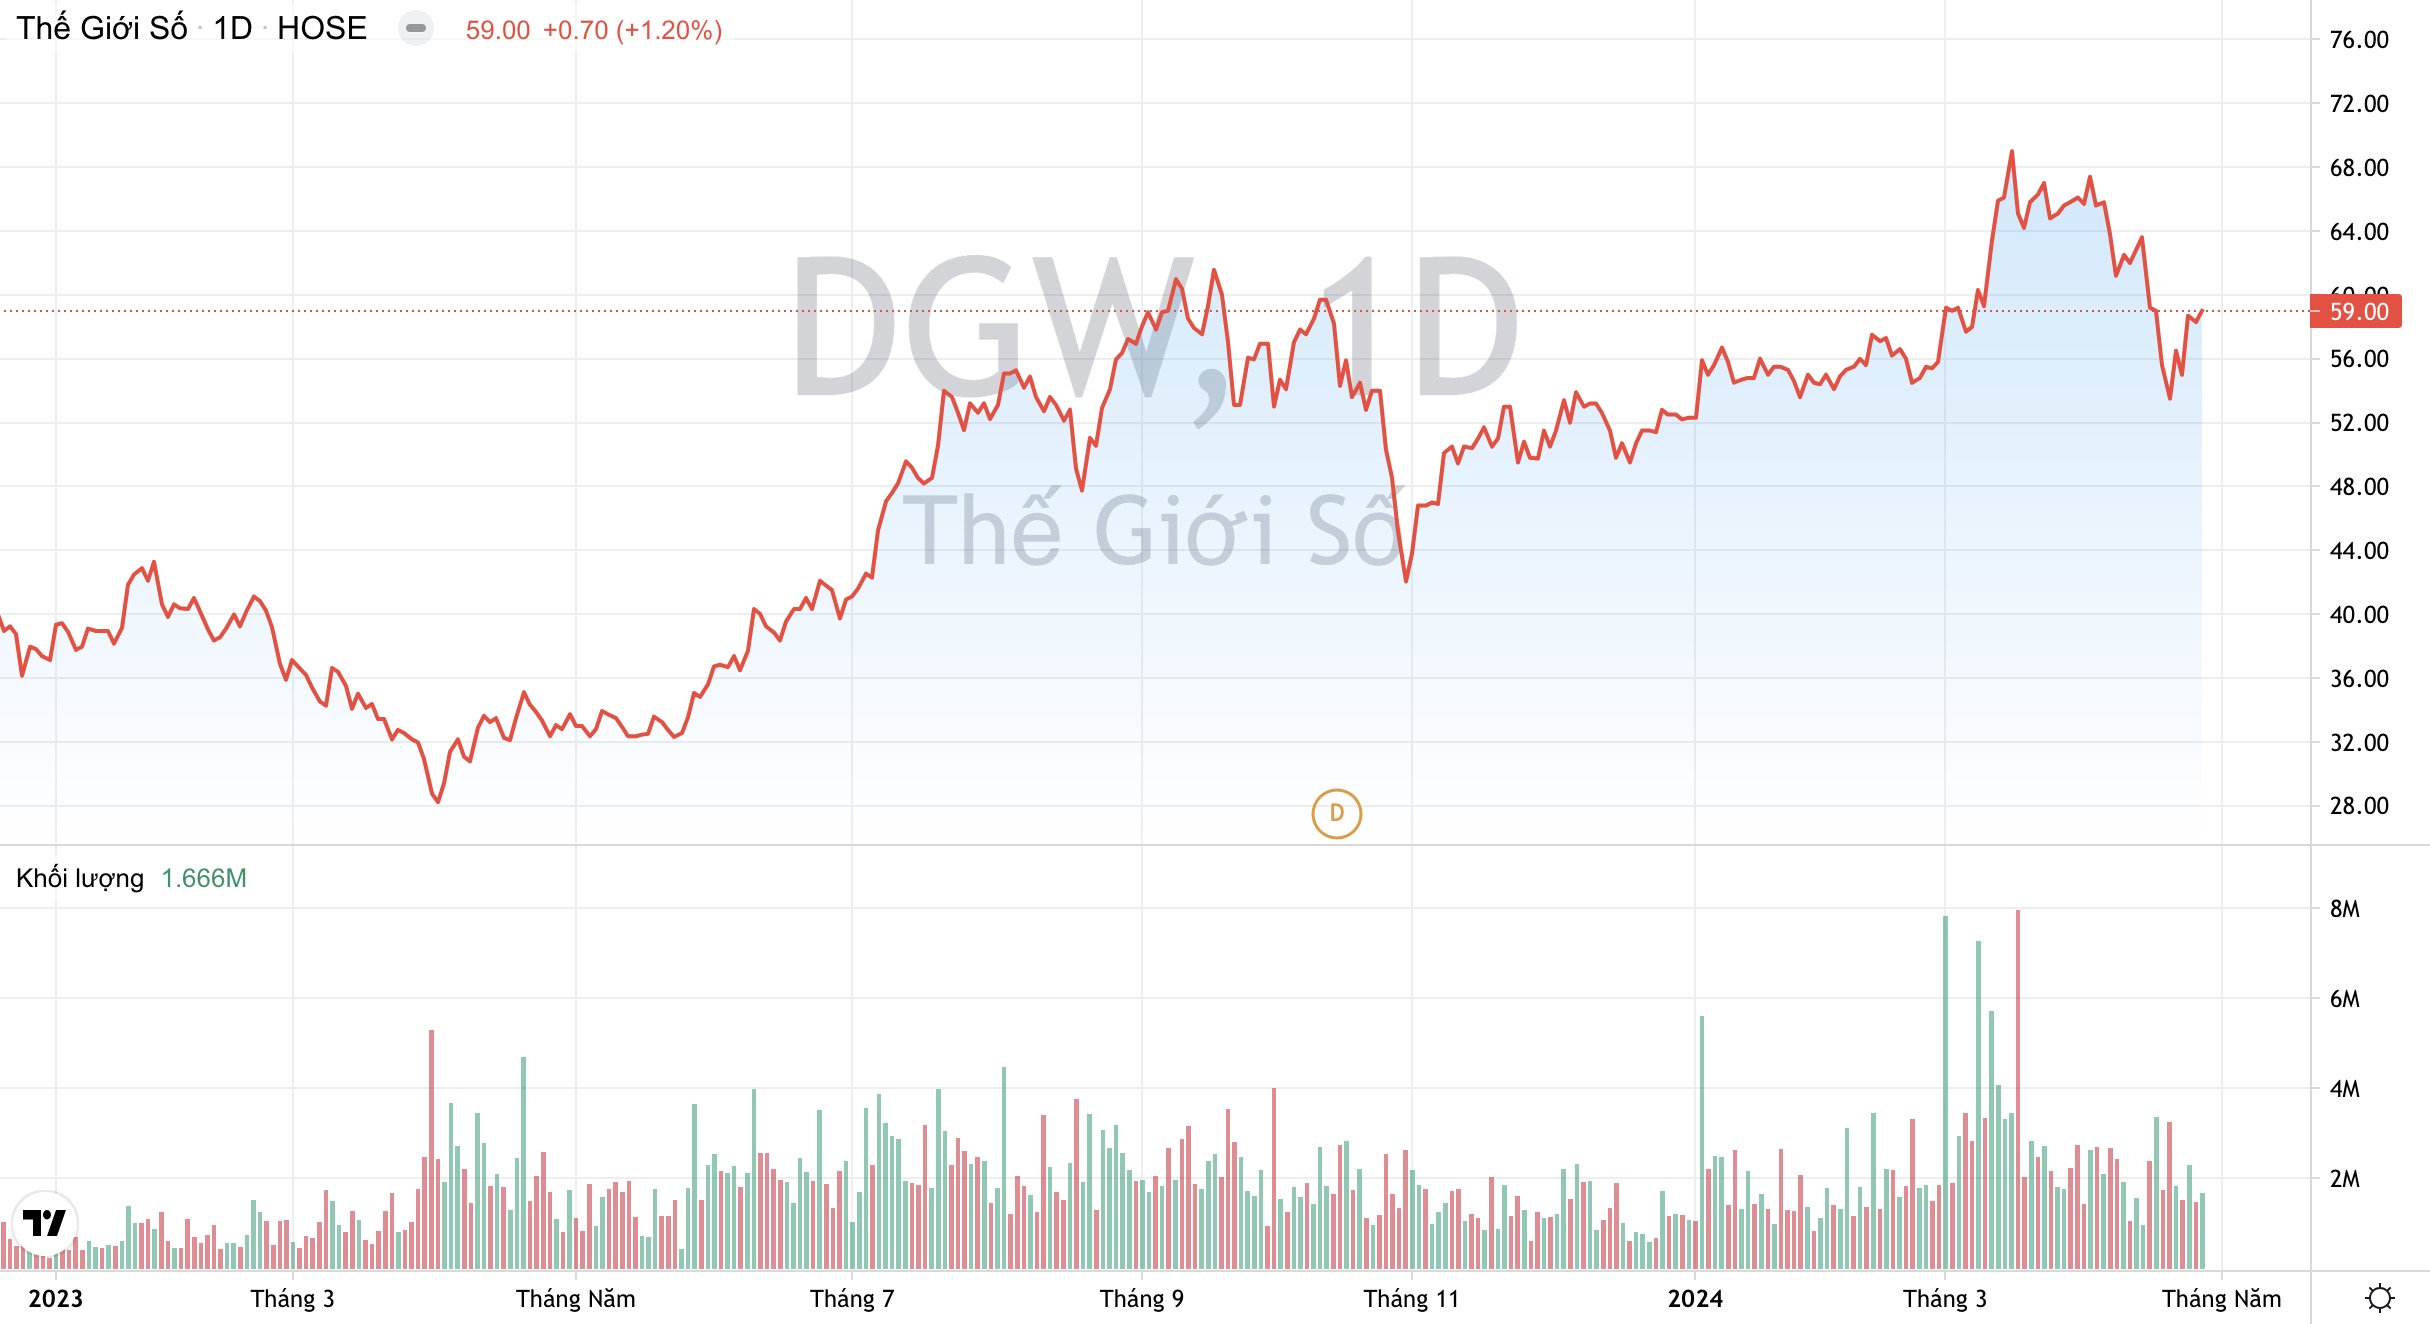 Giá cổ phiếu DGW Thế Giới Số